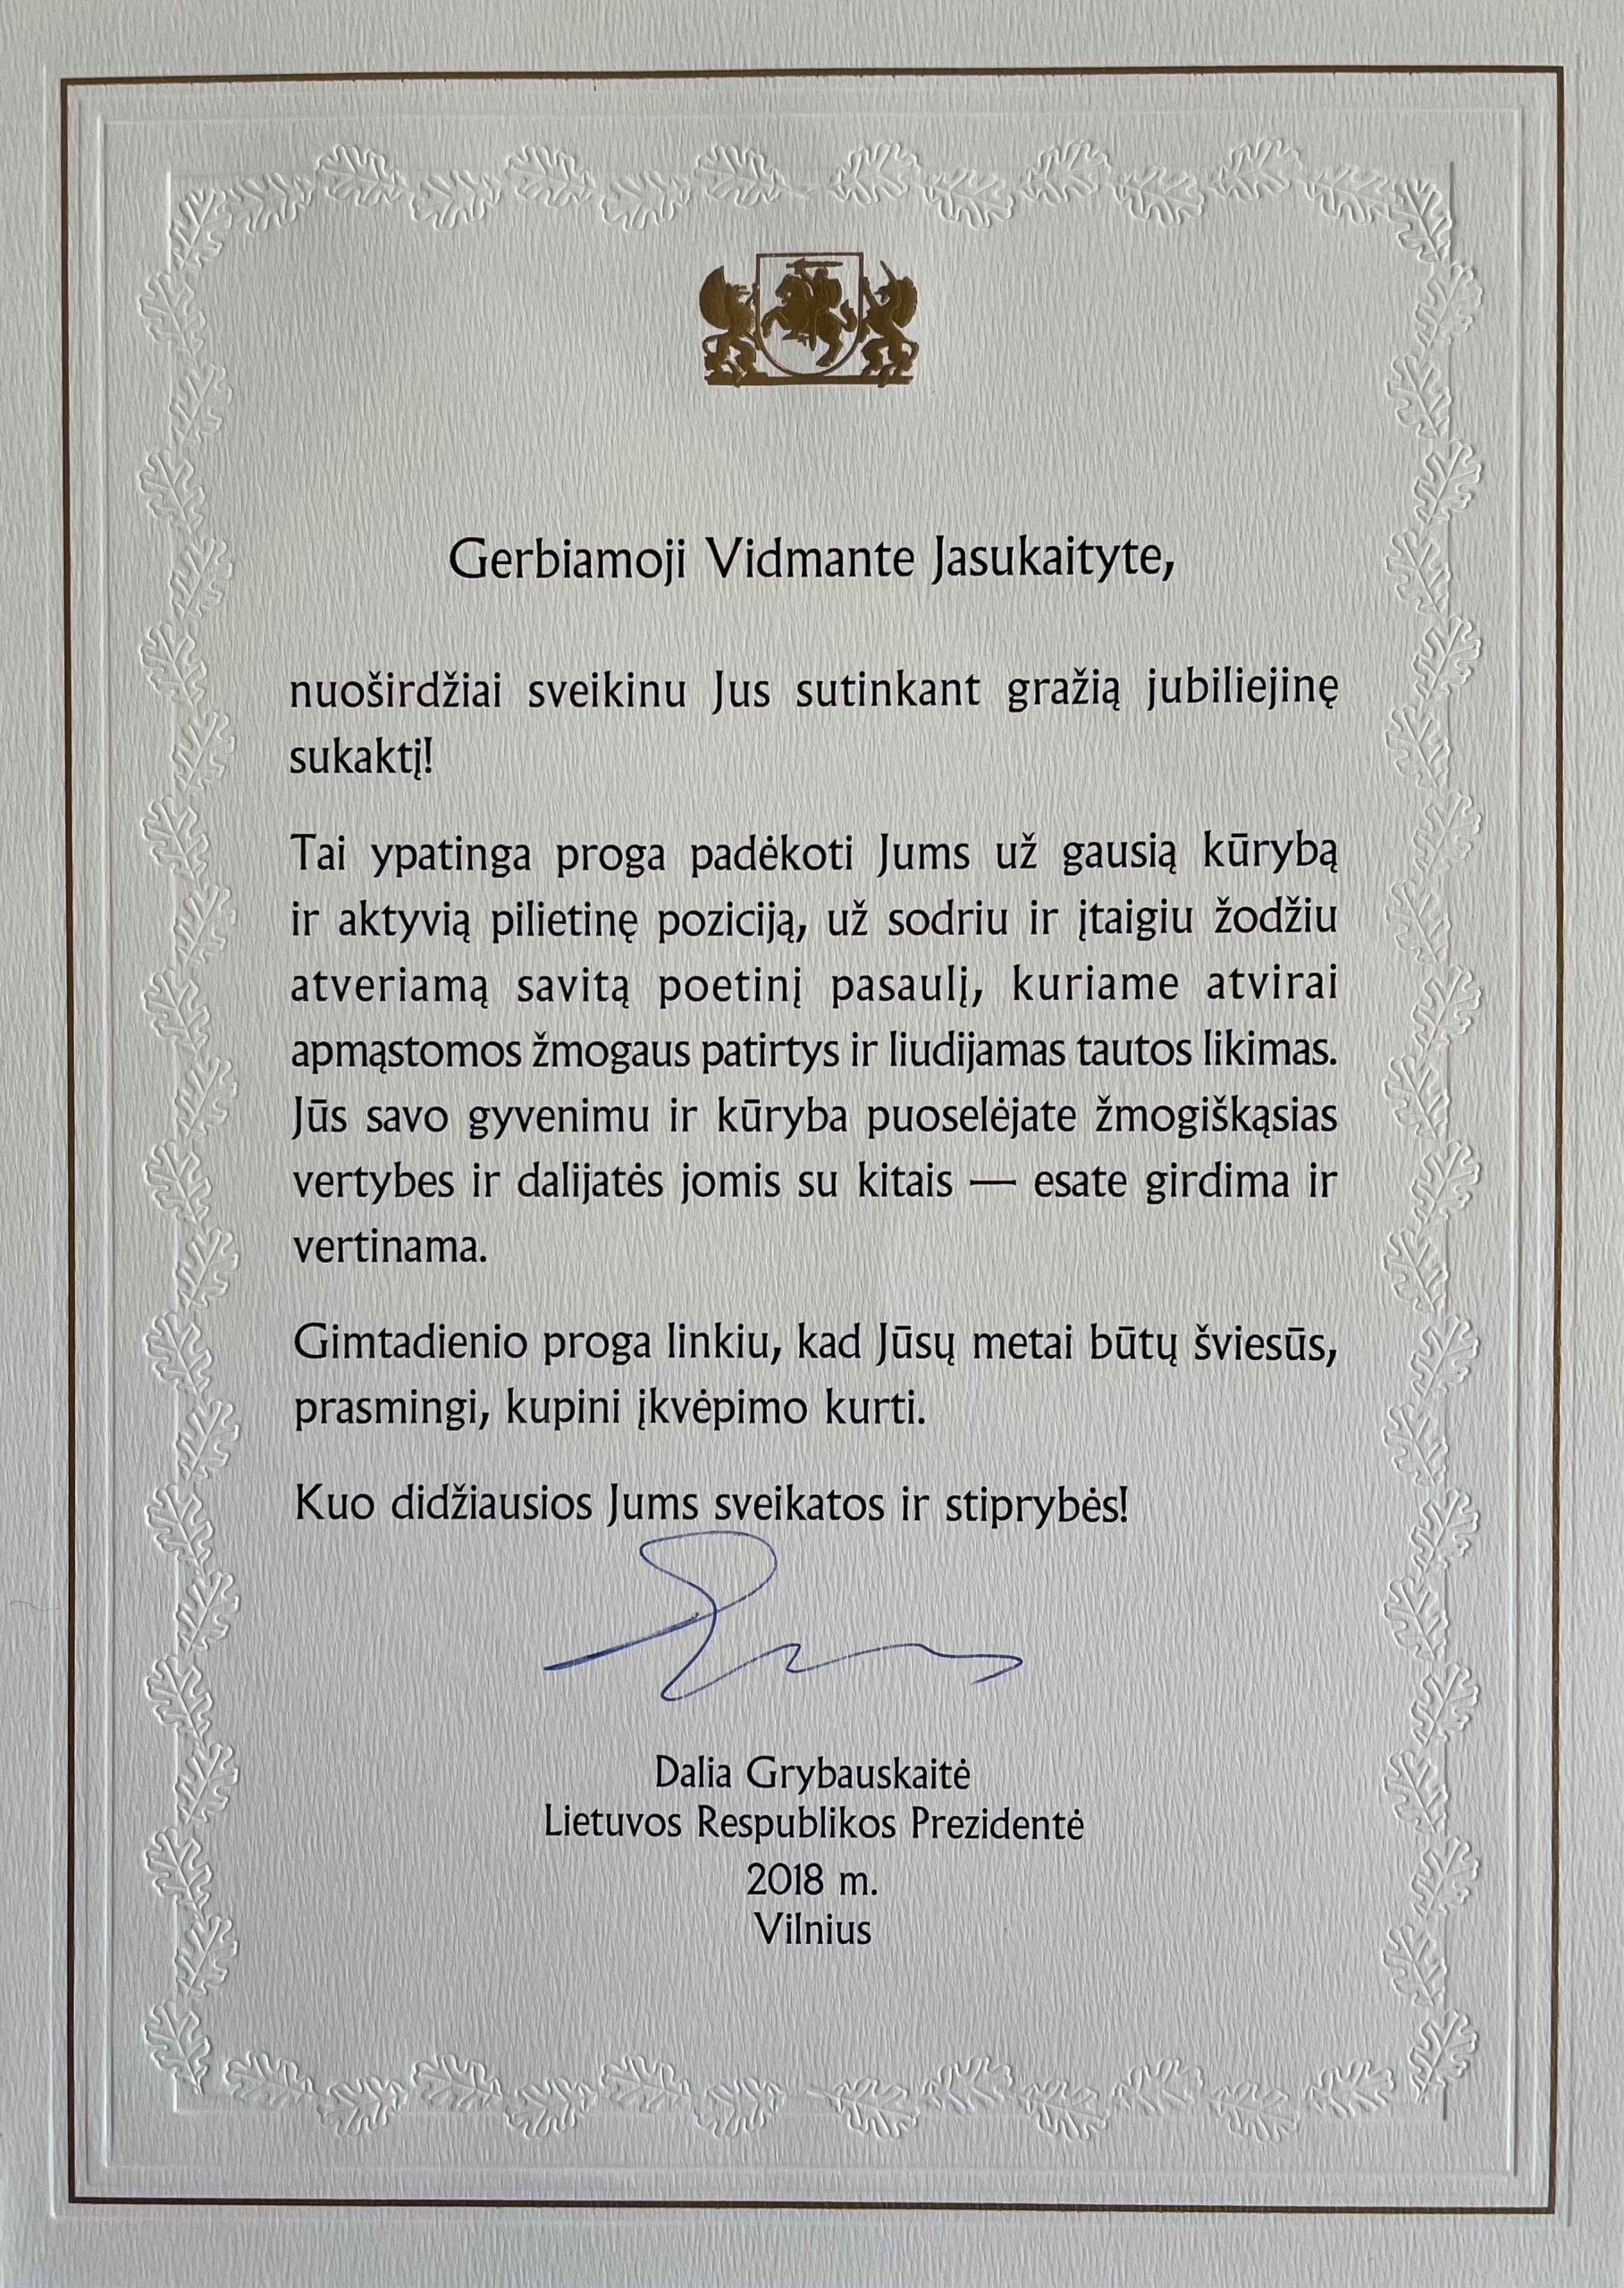 D. Grybauskaitės sveikinimas V. Jasukaitytei. Vilnius, 2018 m. MLLM GEK 137778